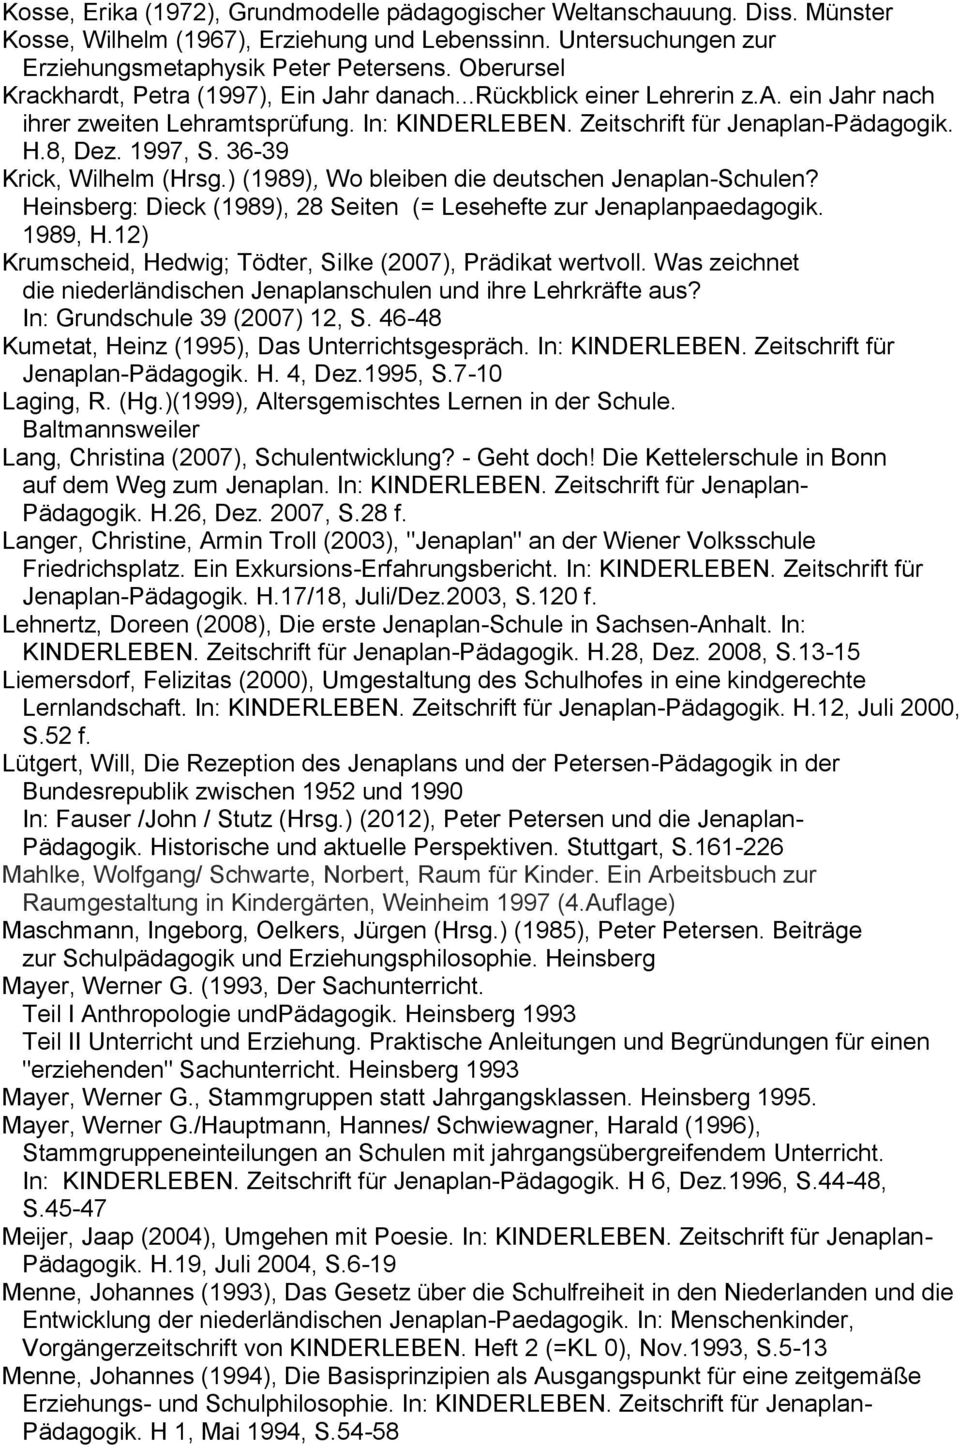 36-39 Krick, Wilhelm (Hrsg.) (1989), Wo bleiben die deutschen Jenaplan-Schulen? Heinsberg: Dieck (1989), 28 Seiten (= Lesehefte zur Jenaplanpaedagogik. 1989, H.